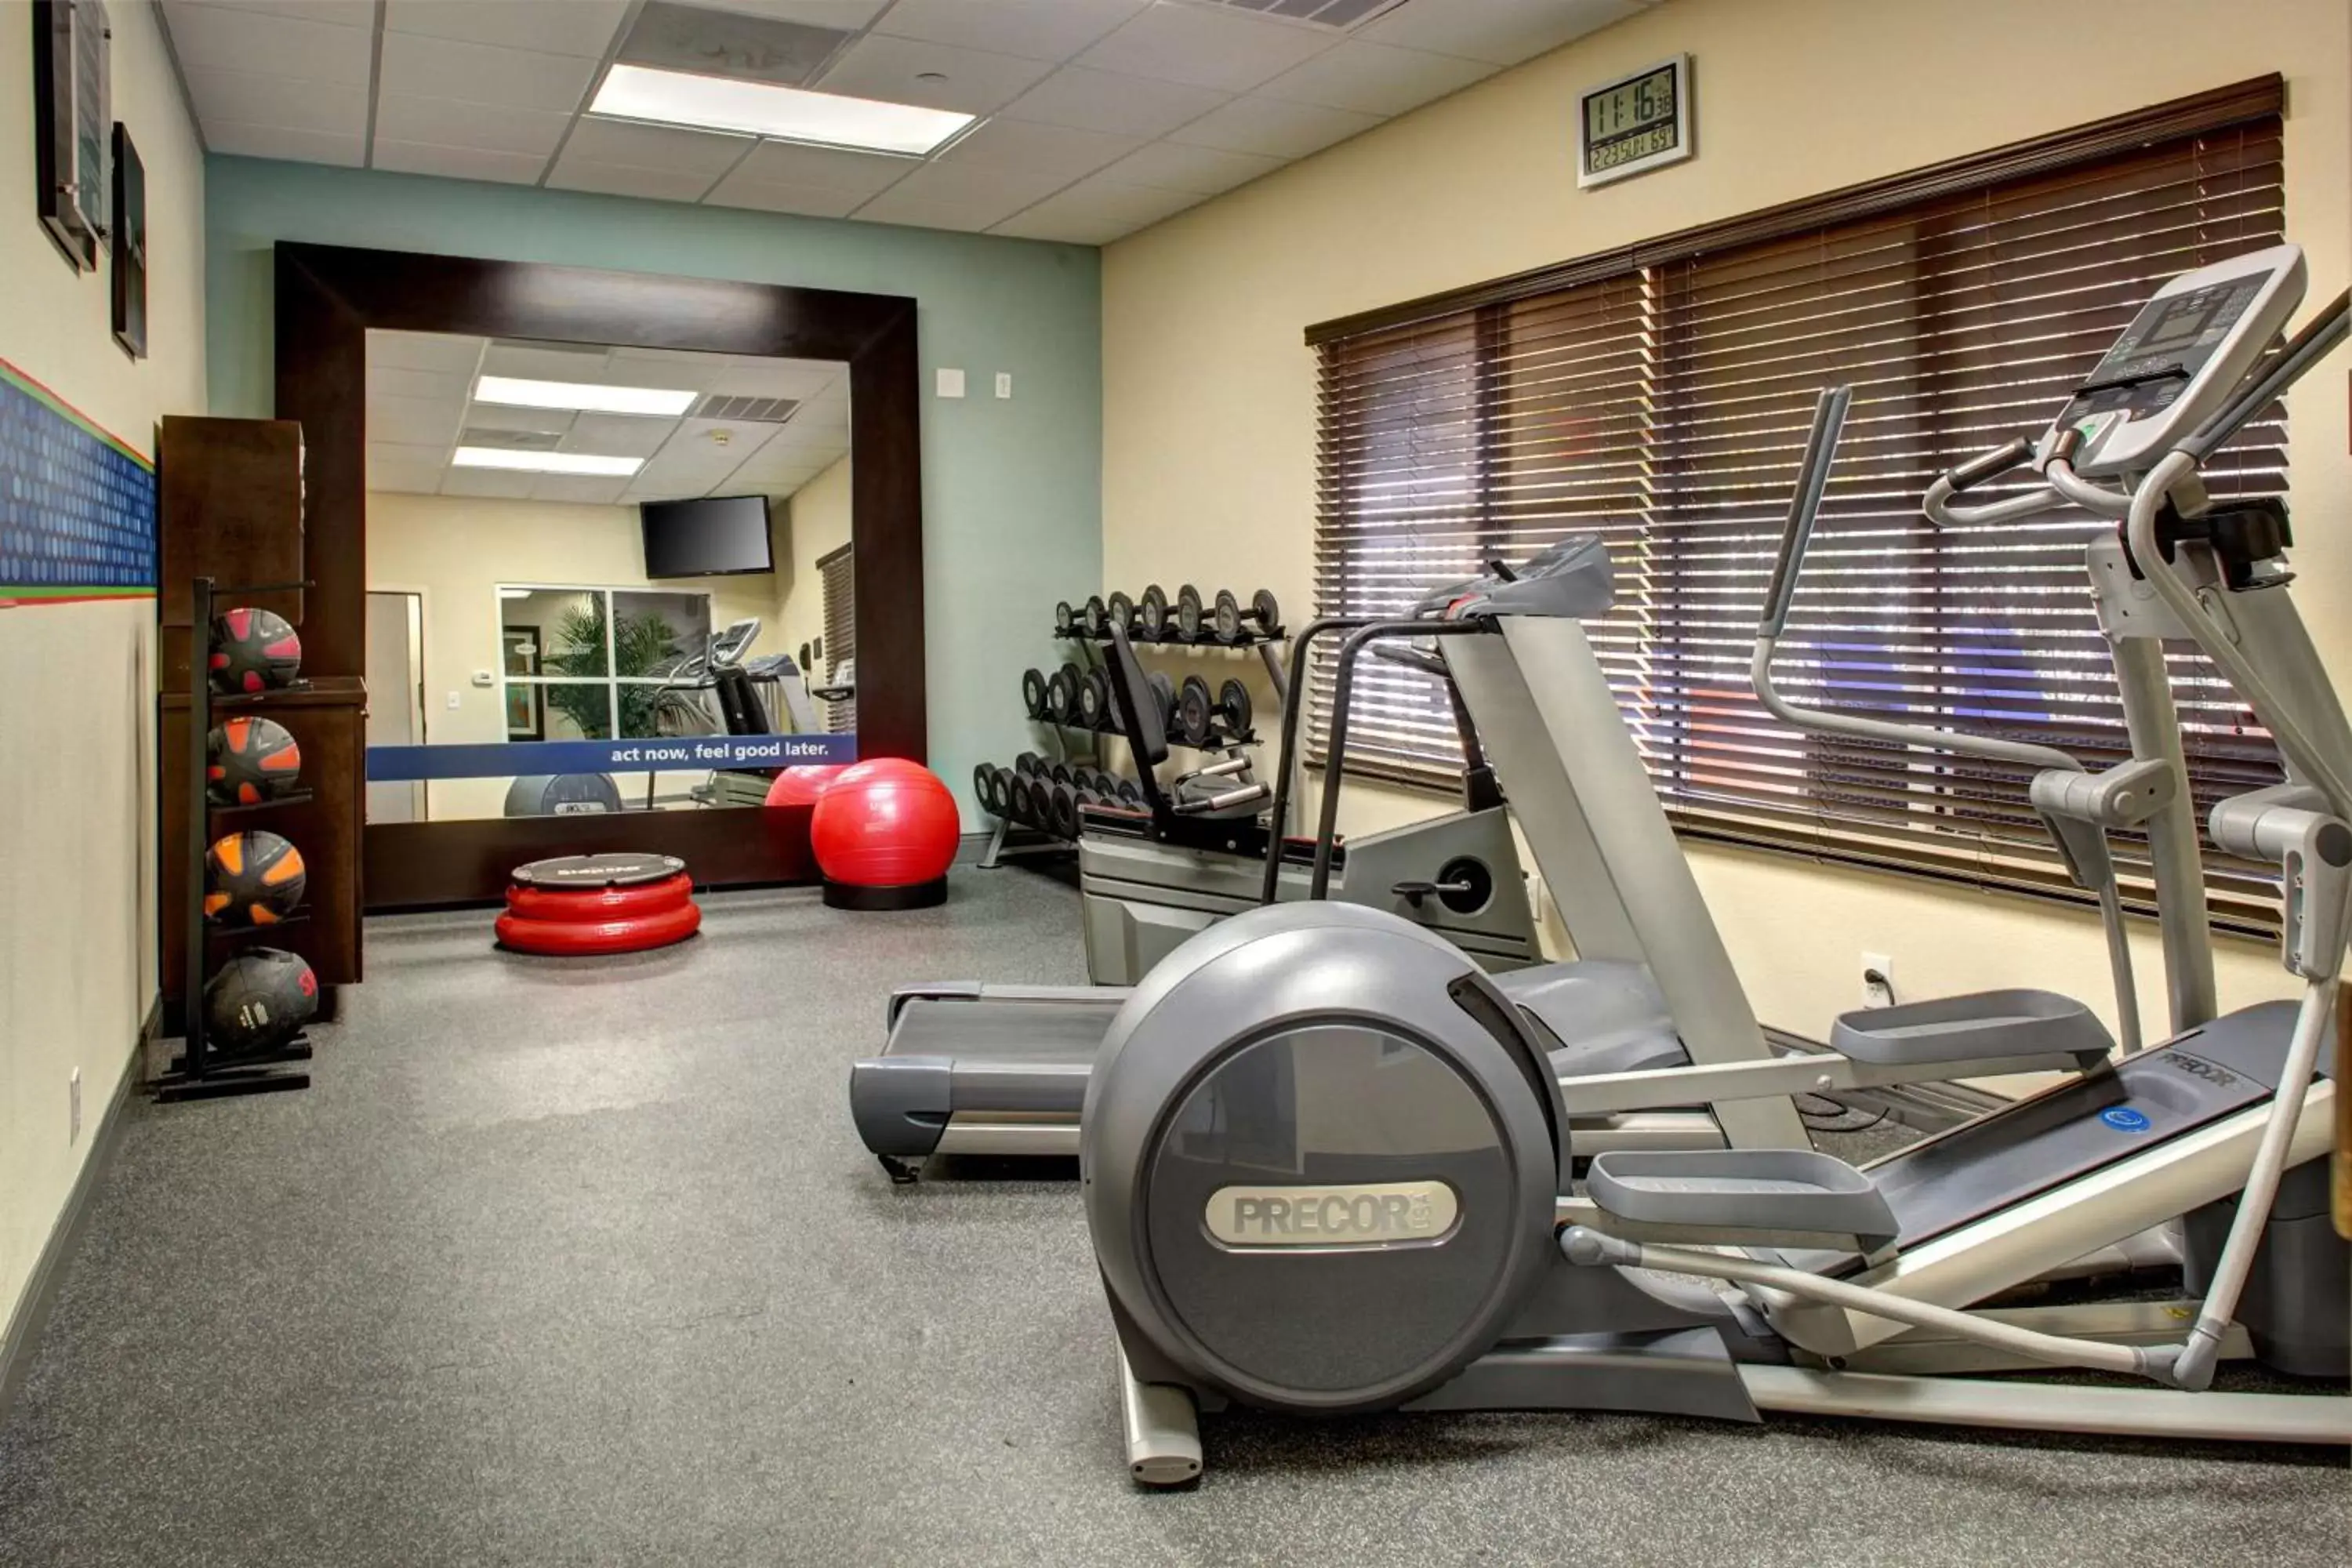 Fitness centre/facilities, Fitness Center/Facilities in Hampton Inn Miami-Coconut Grove/Coral Gables